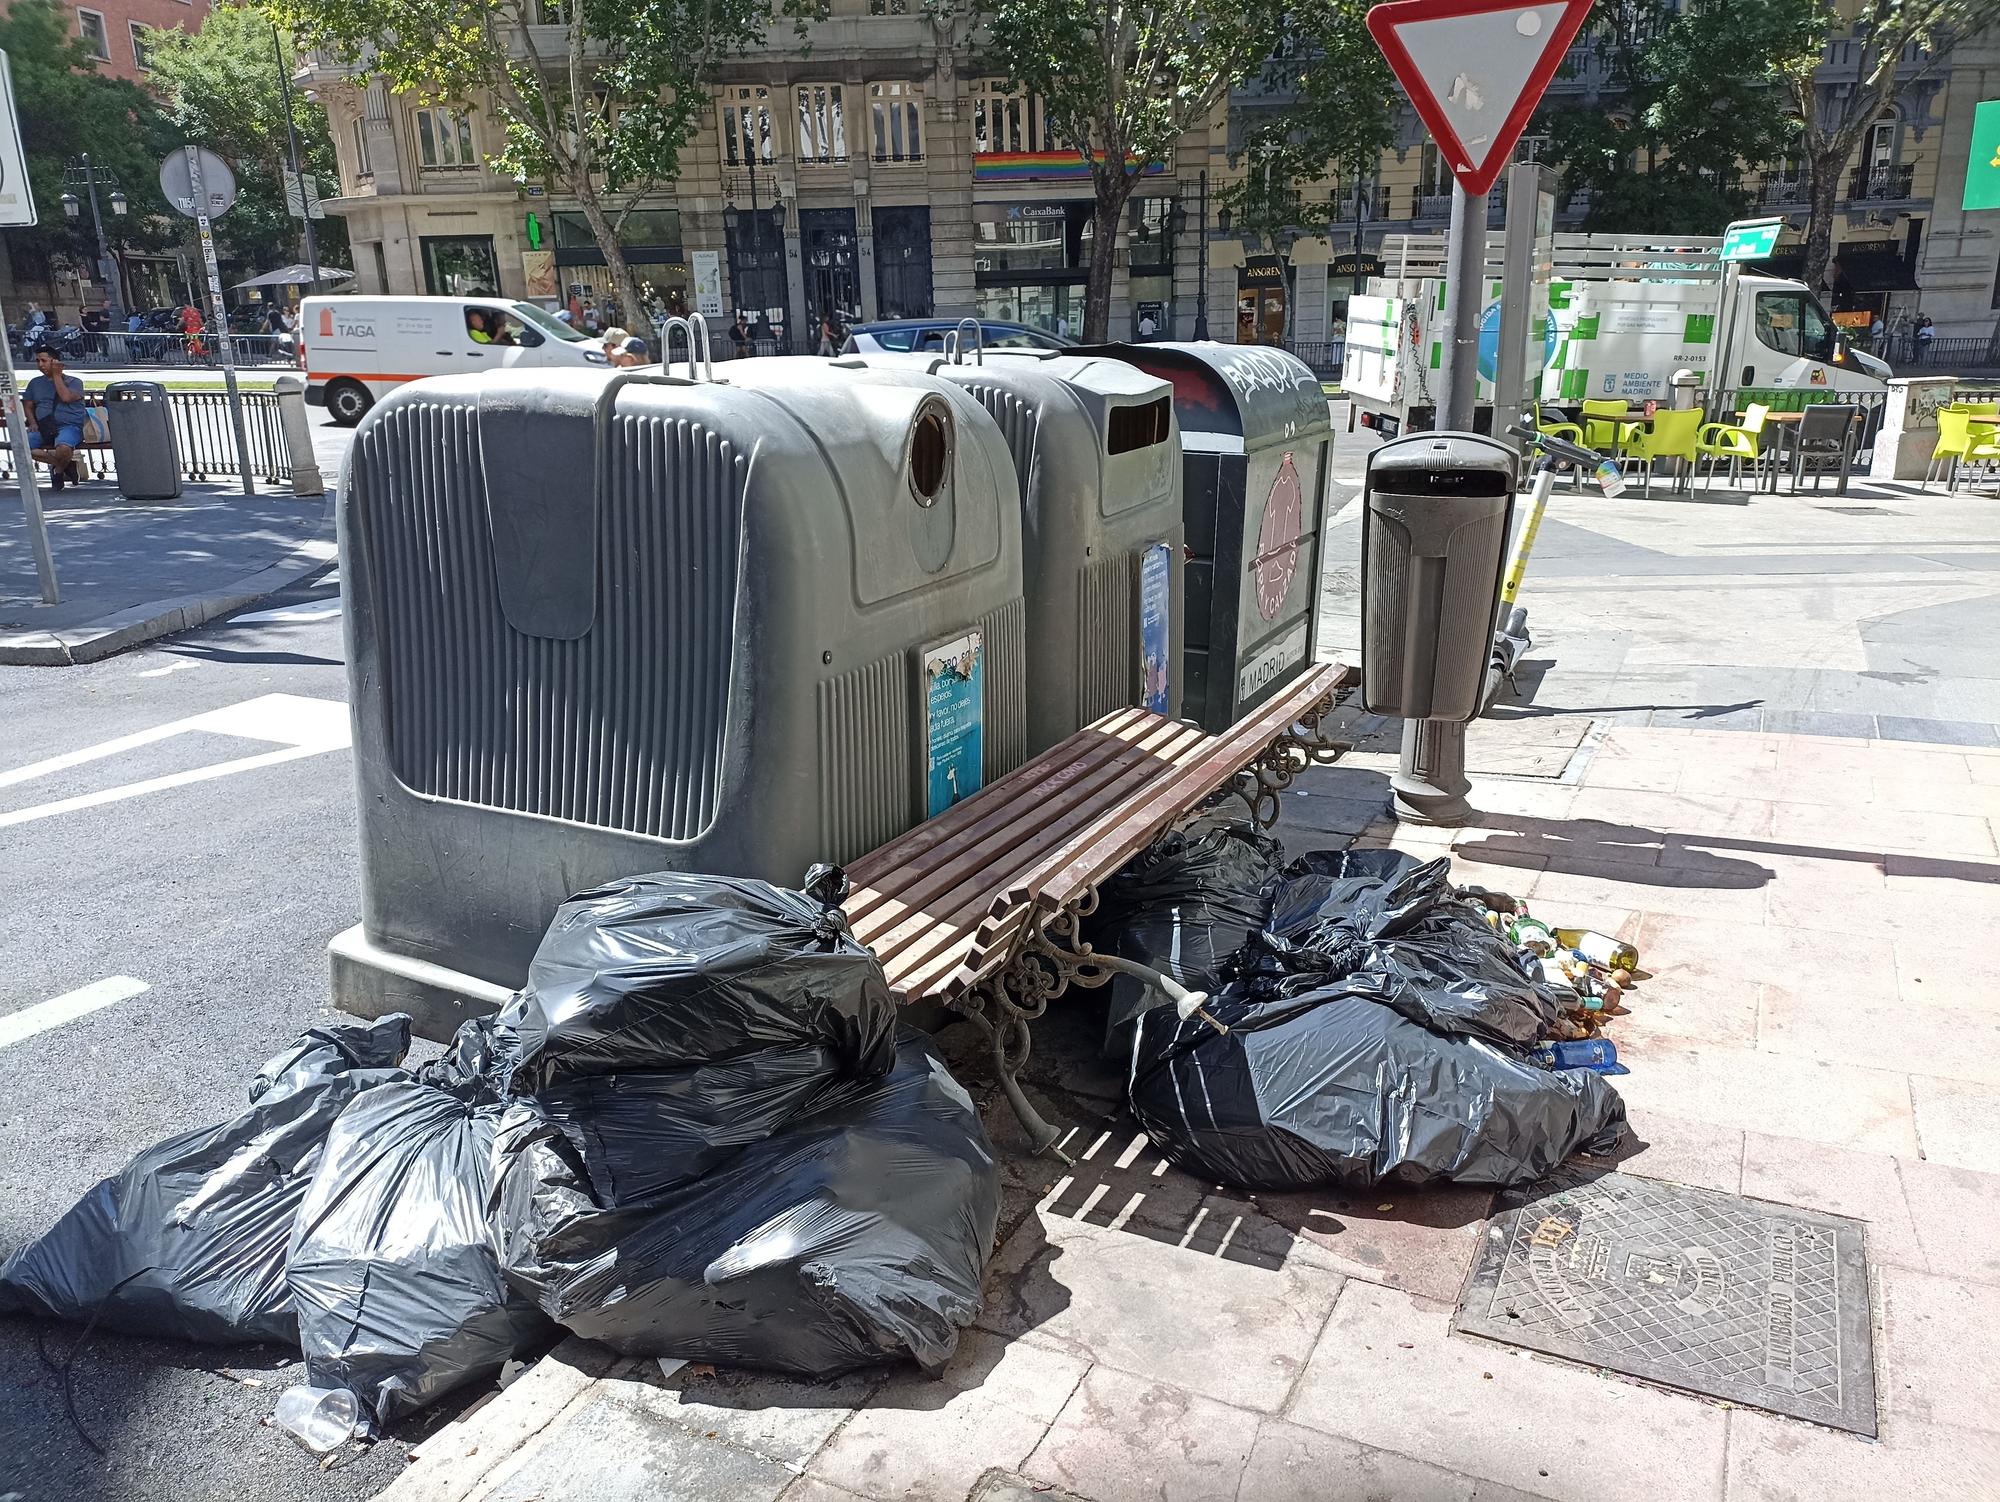 La basura se acumula alrededor de los contenedores vacíos de la calle Pedro Muñoz Seca.